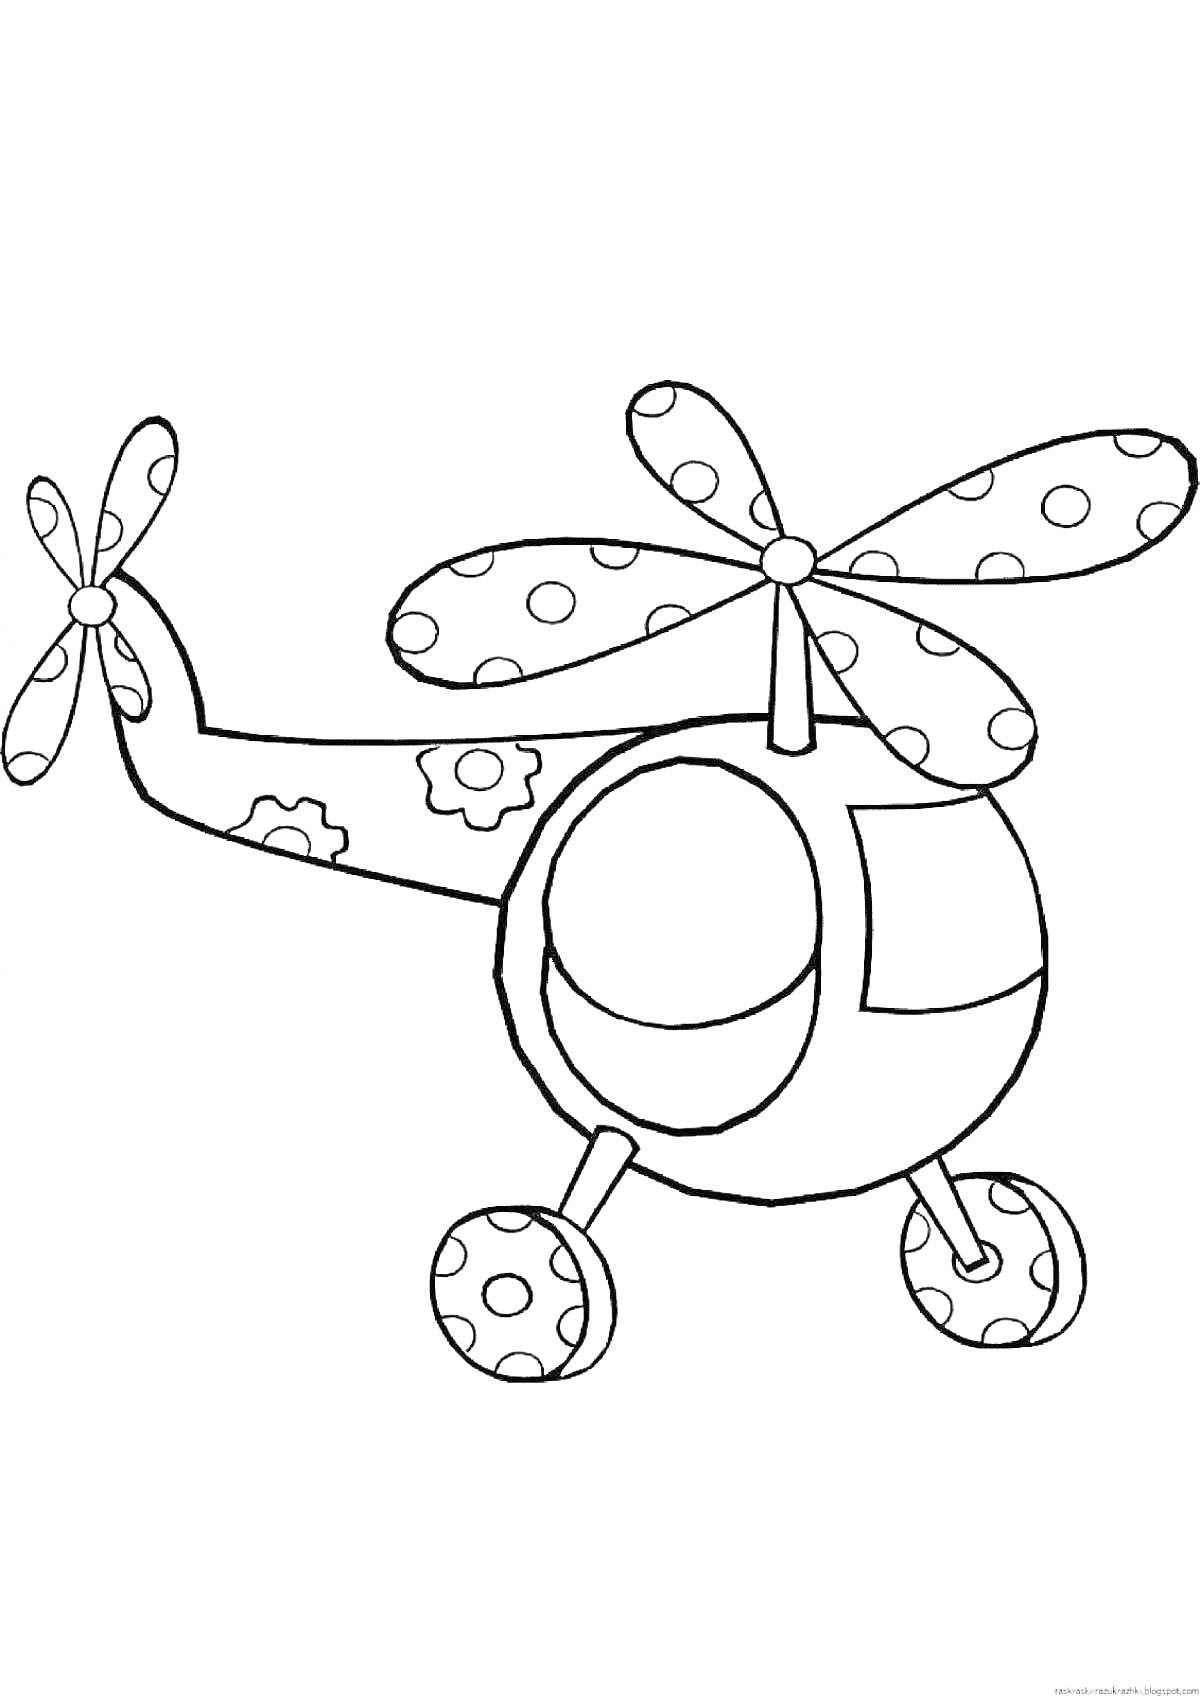 Раскраска Вертолёт с узорами в горошек и цветы на хвосте